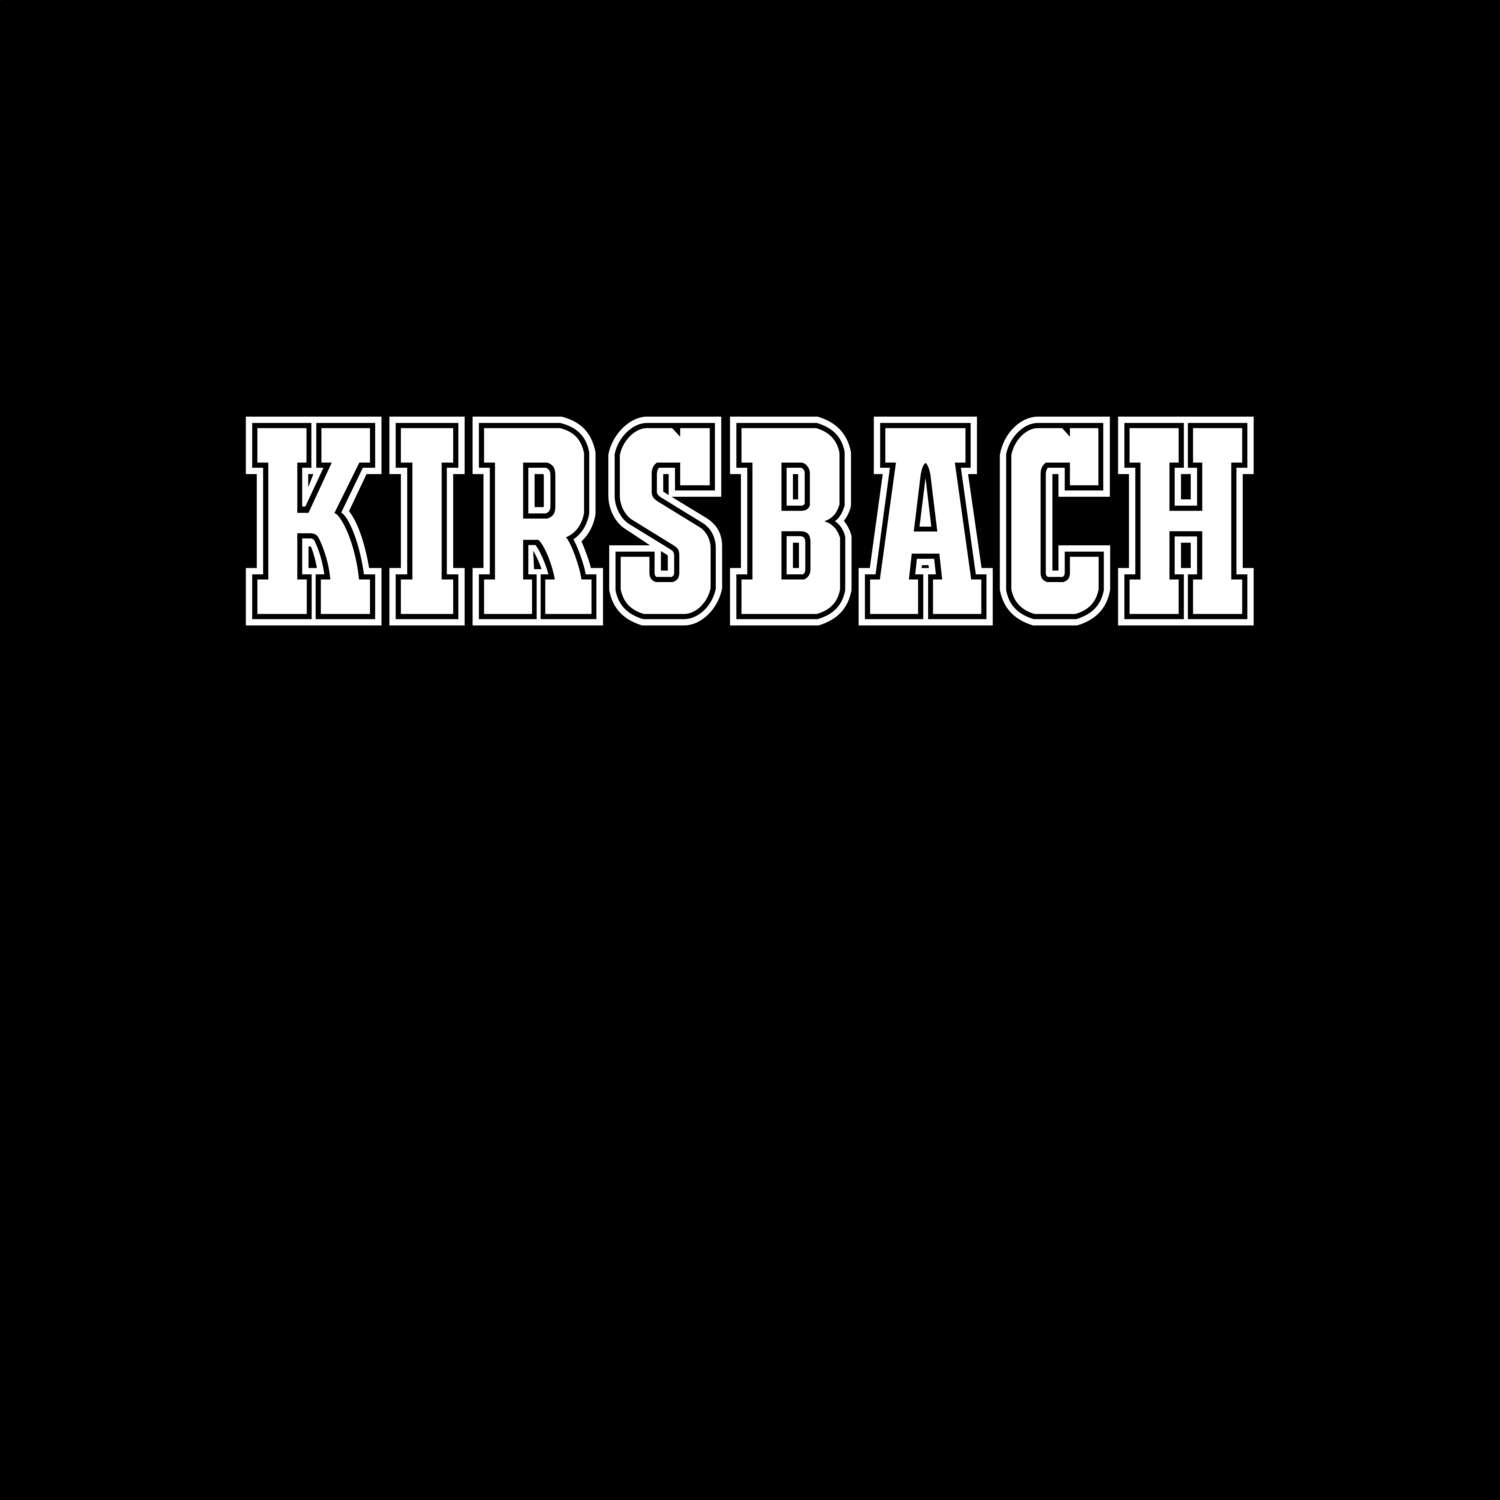 Kirsbach T-Shirt »Classic«